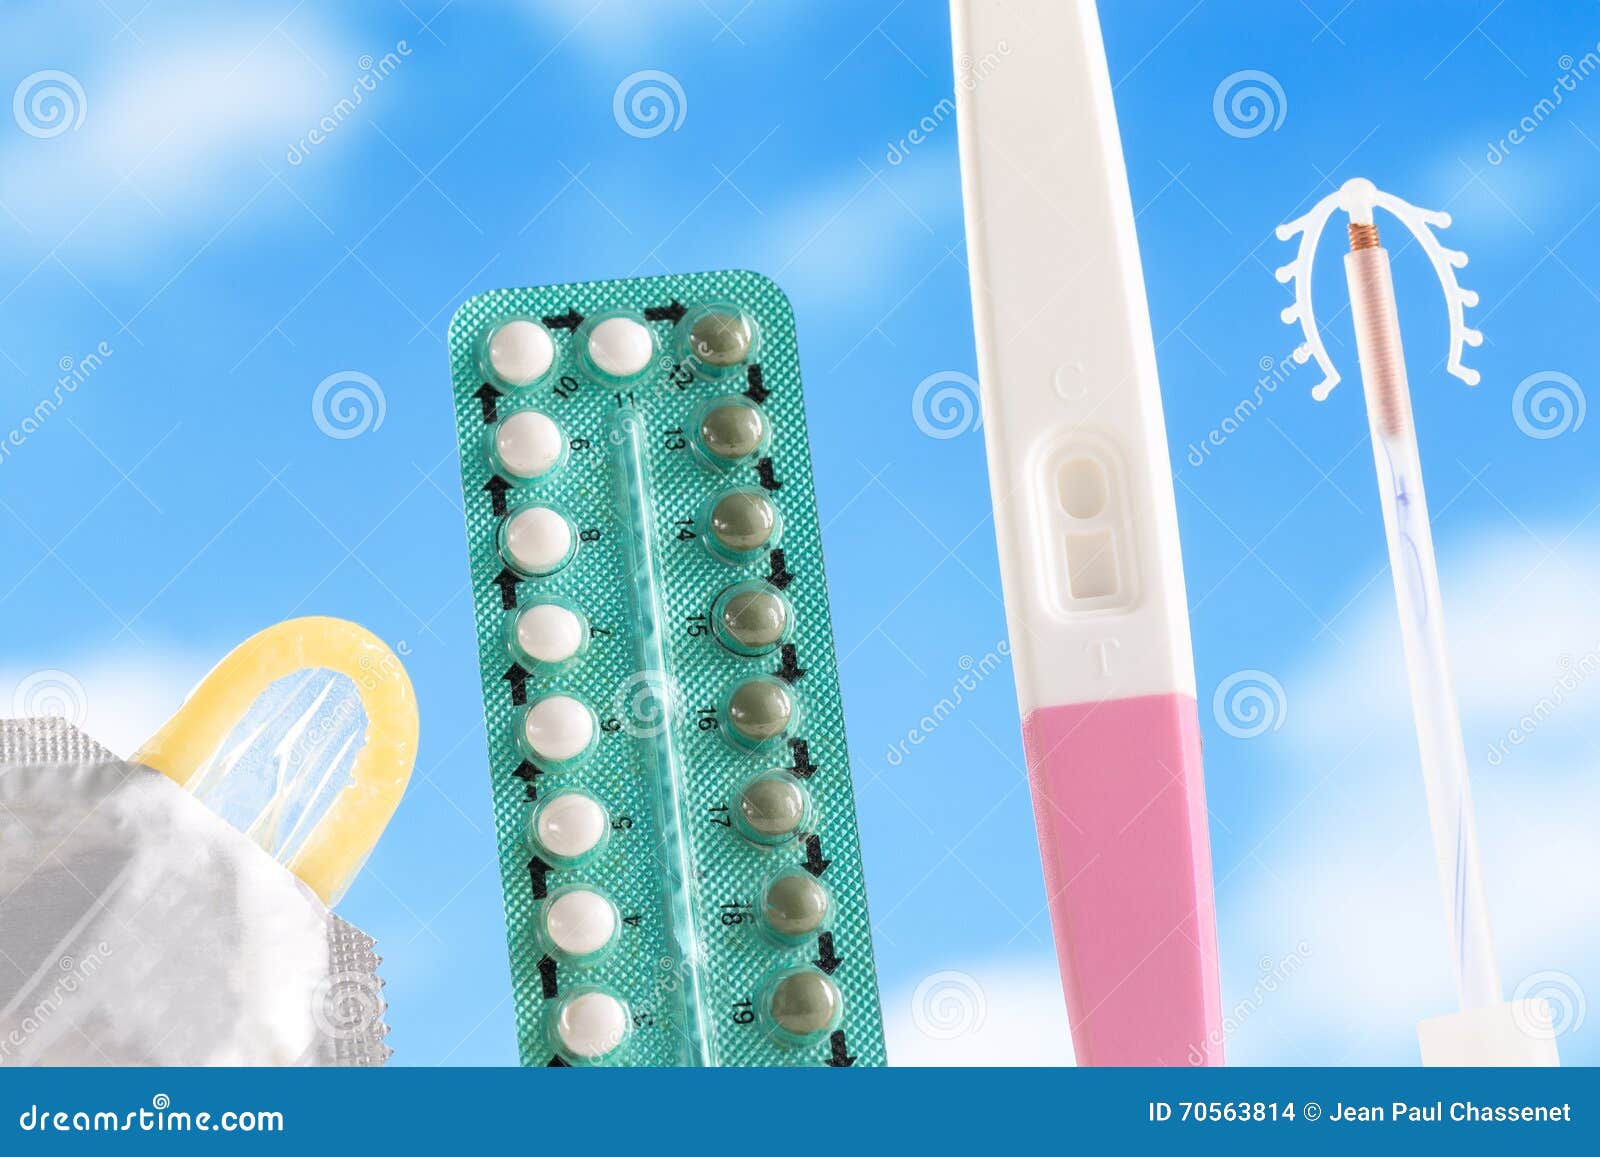 Предохранение после беременности. Контрацептивы фото. Зонт контрацептив. Контрацептивы с шипами. Светящиеся контрацептивы.